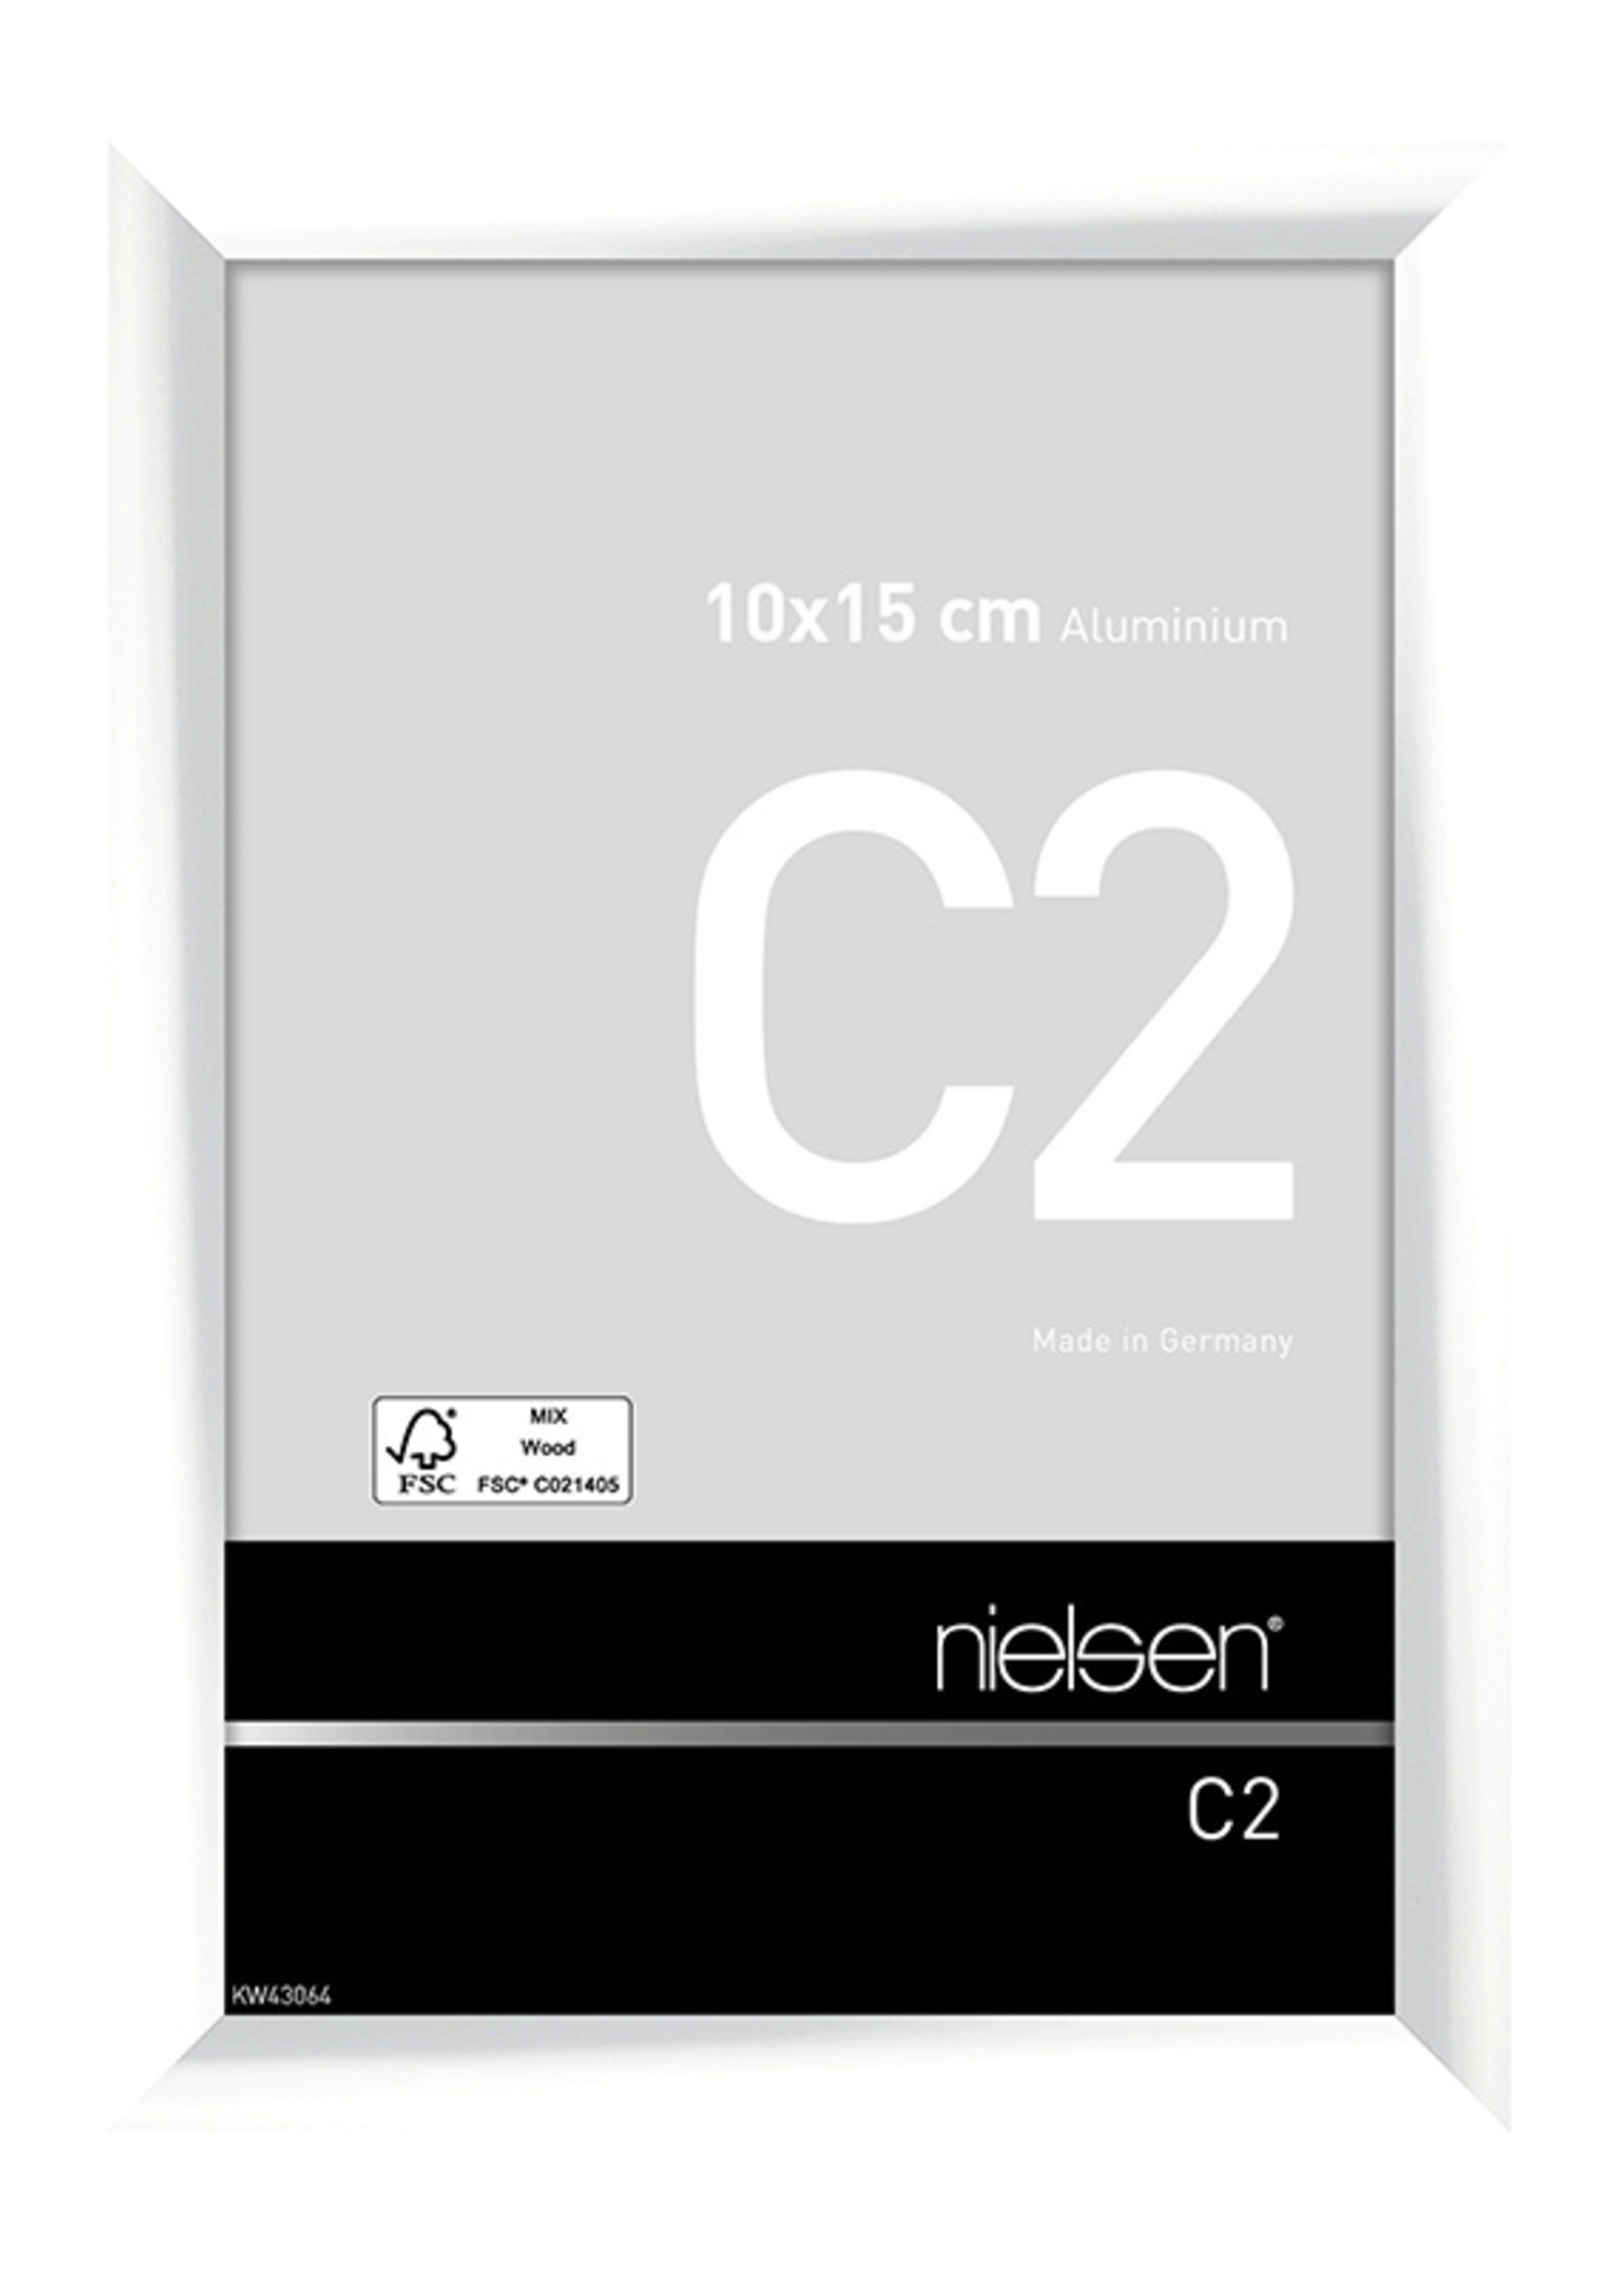 Nielsen C2 Hgl. White